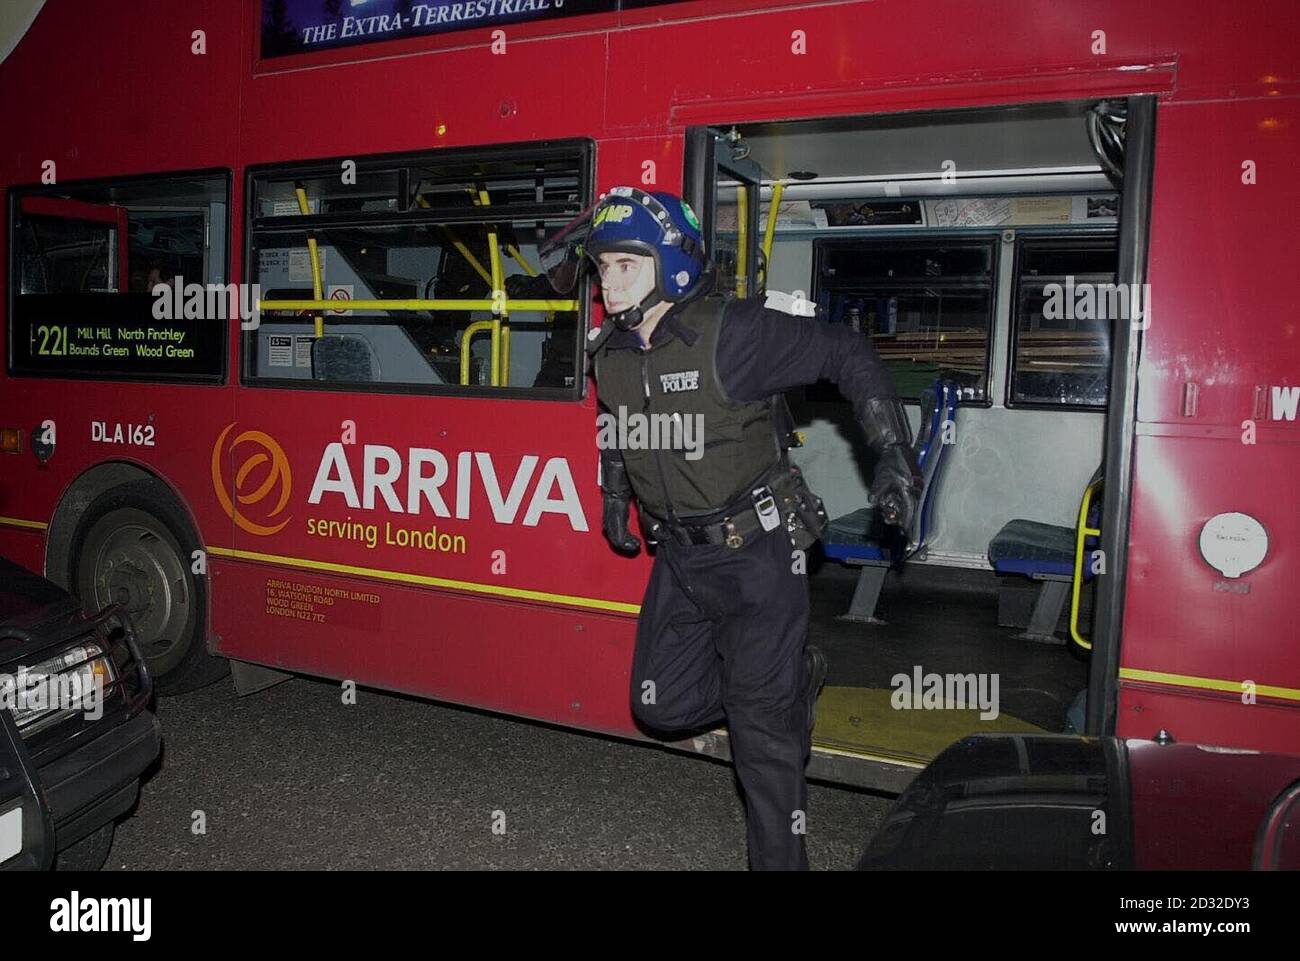 Nicht das übliche Transportmittel für einen Polizisten, der mit dem Bus für einen Drogenüberfall auf das Sparrow Public House, Edgware, North London, ankommt. Stockfoto